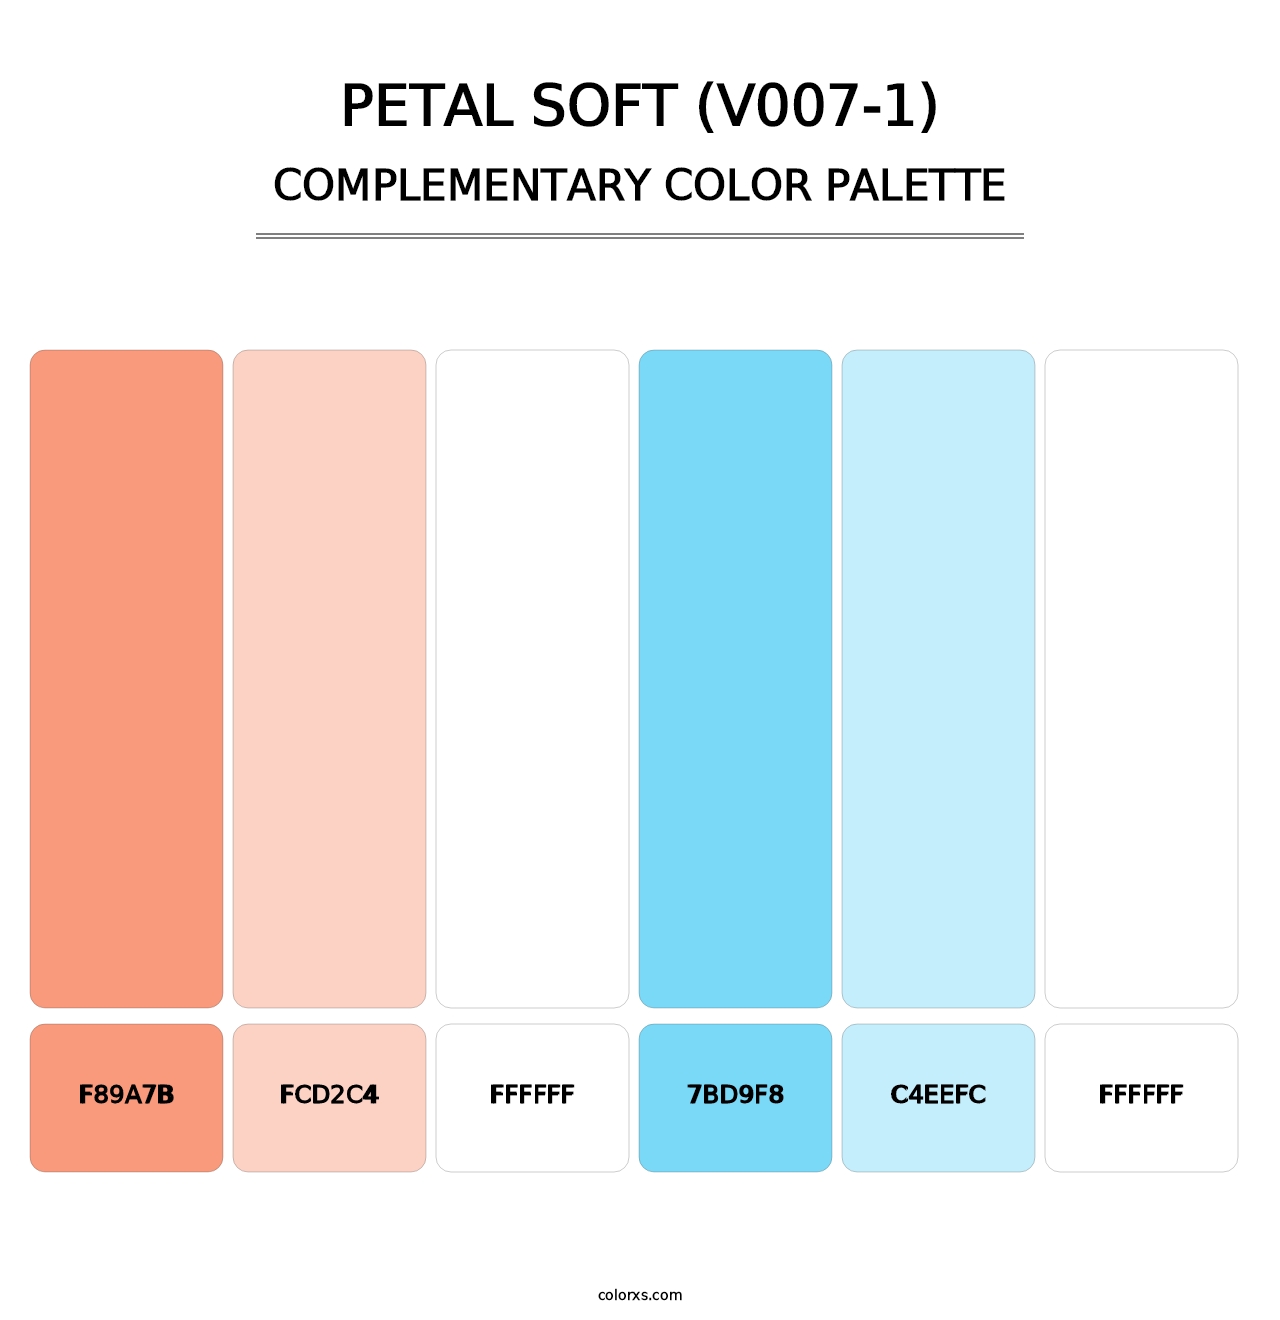 Petal Soft (V007-1) - Complementary Color Palette